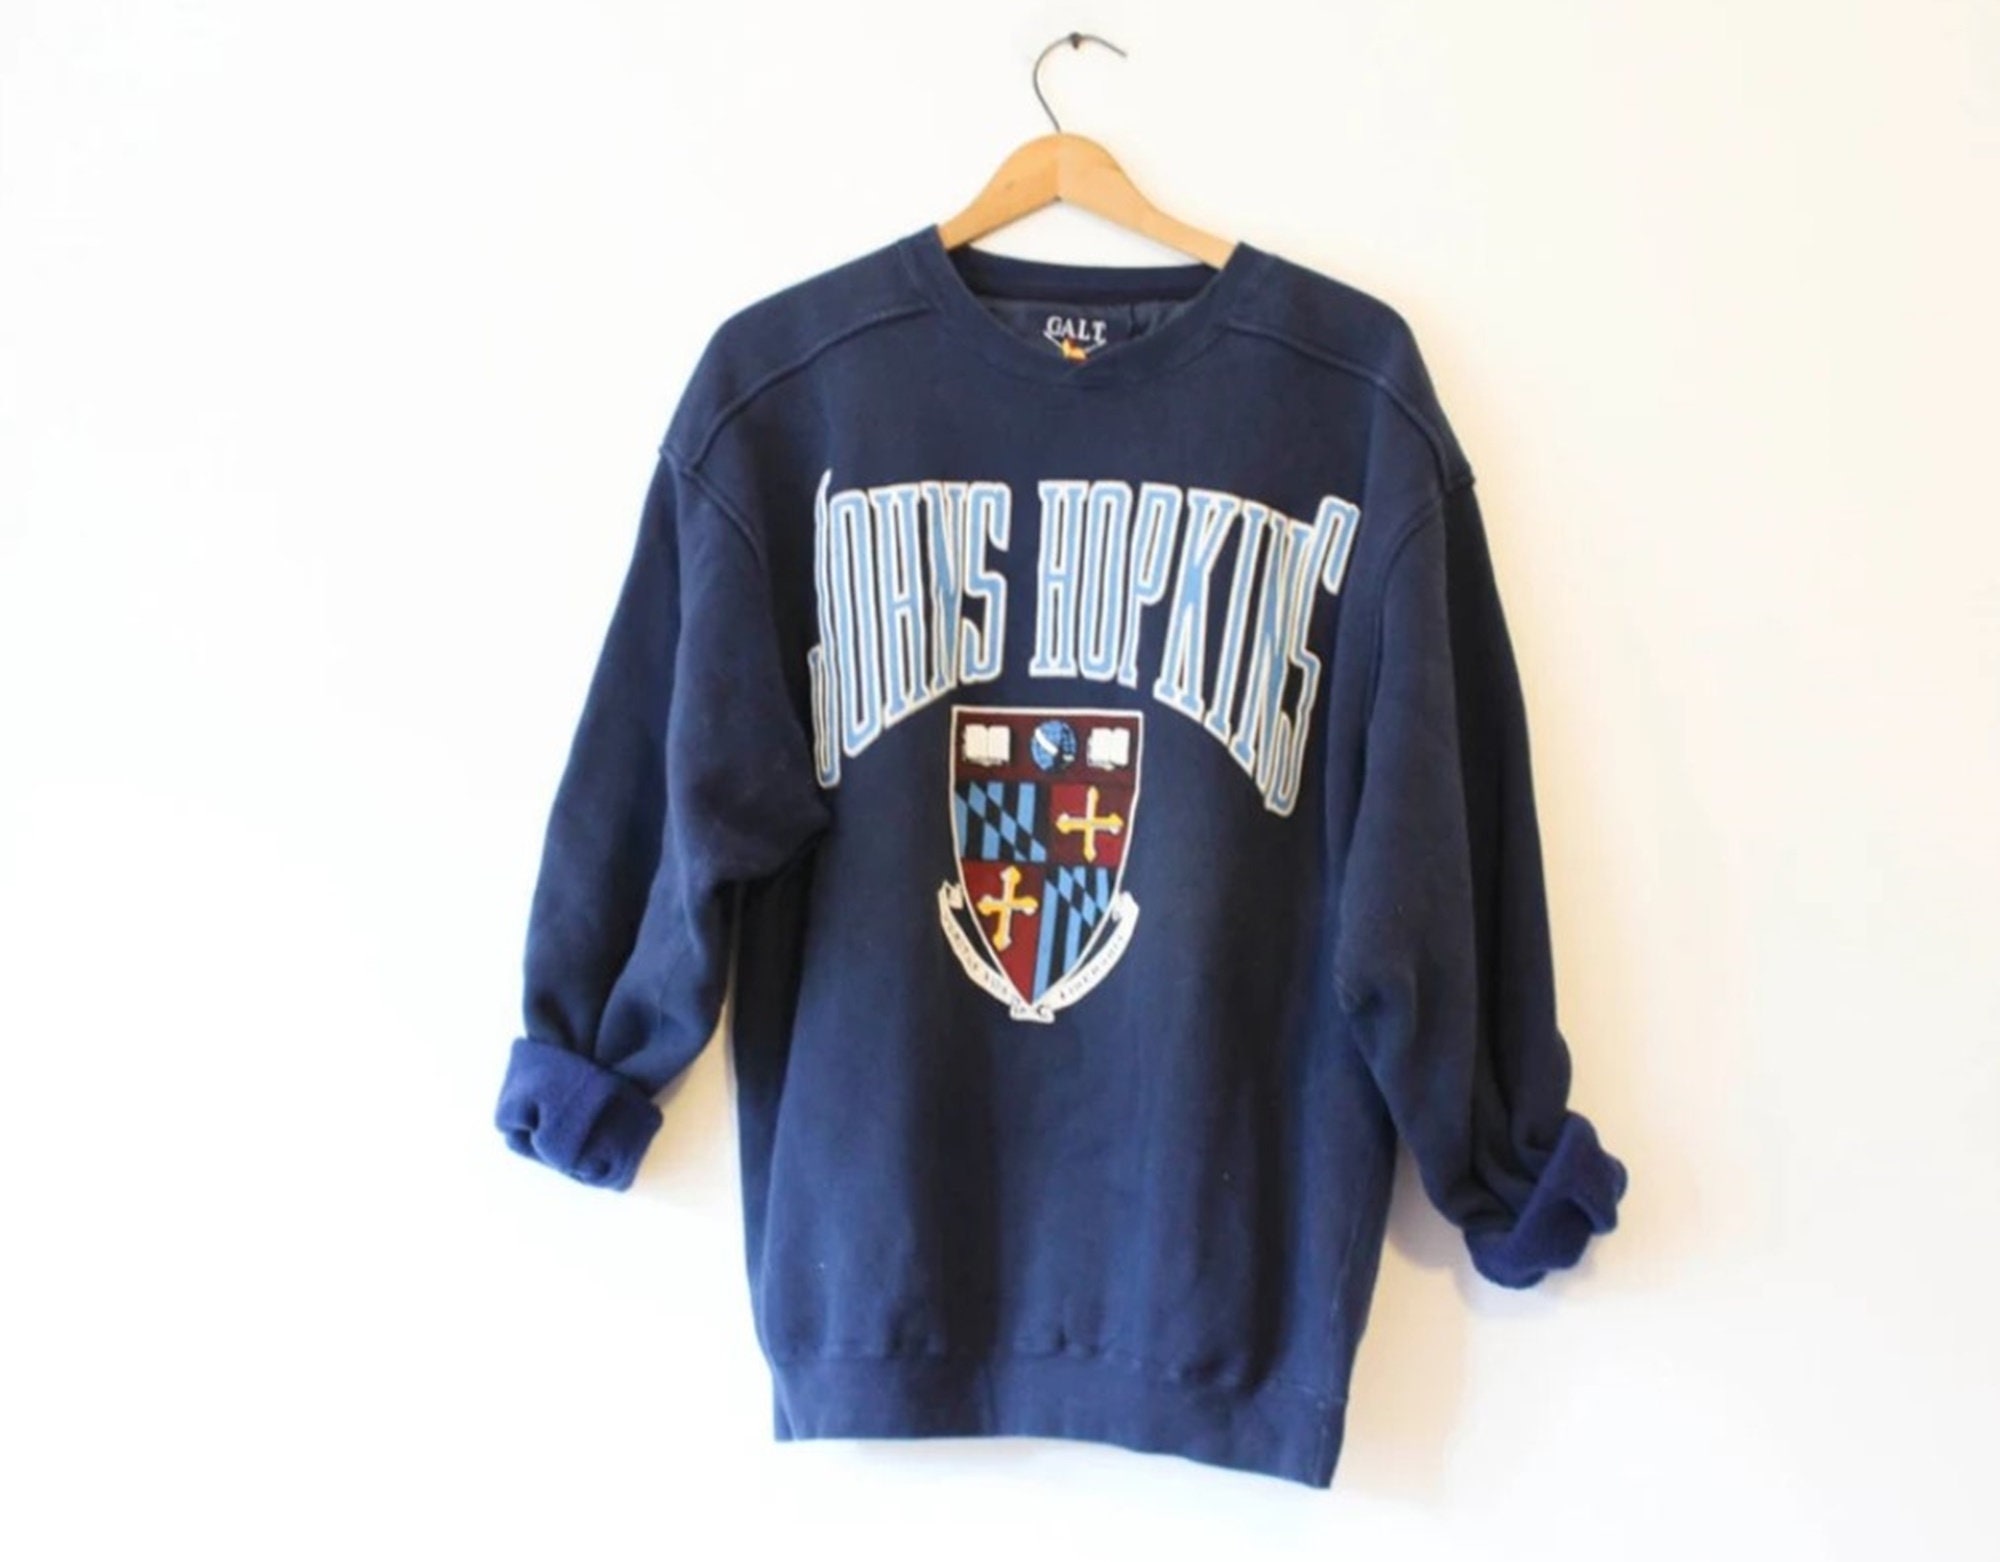 Vintage 90s Johns Hopkins University Blue Jays Sweatshirt 